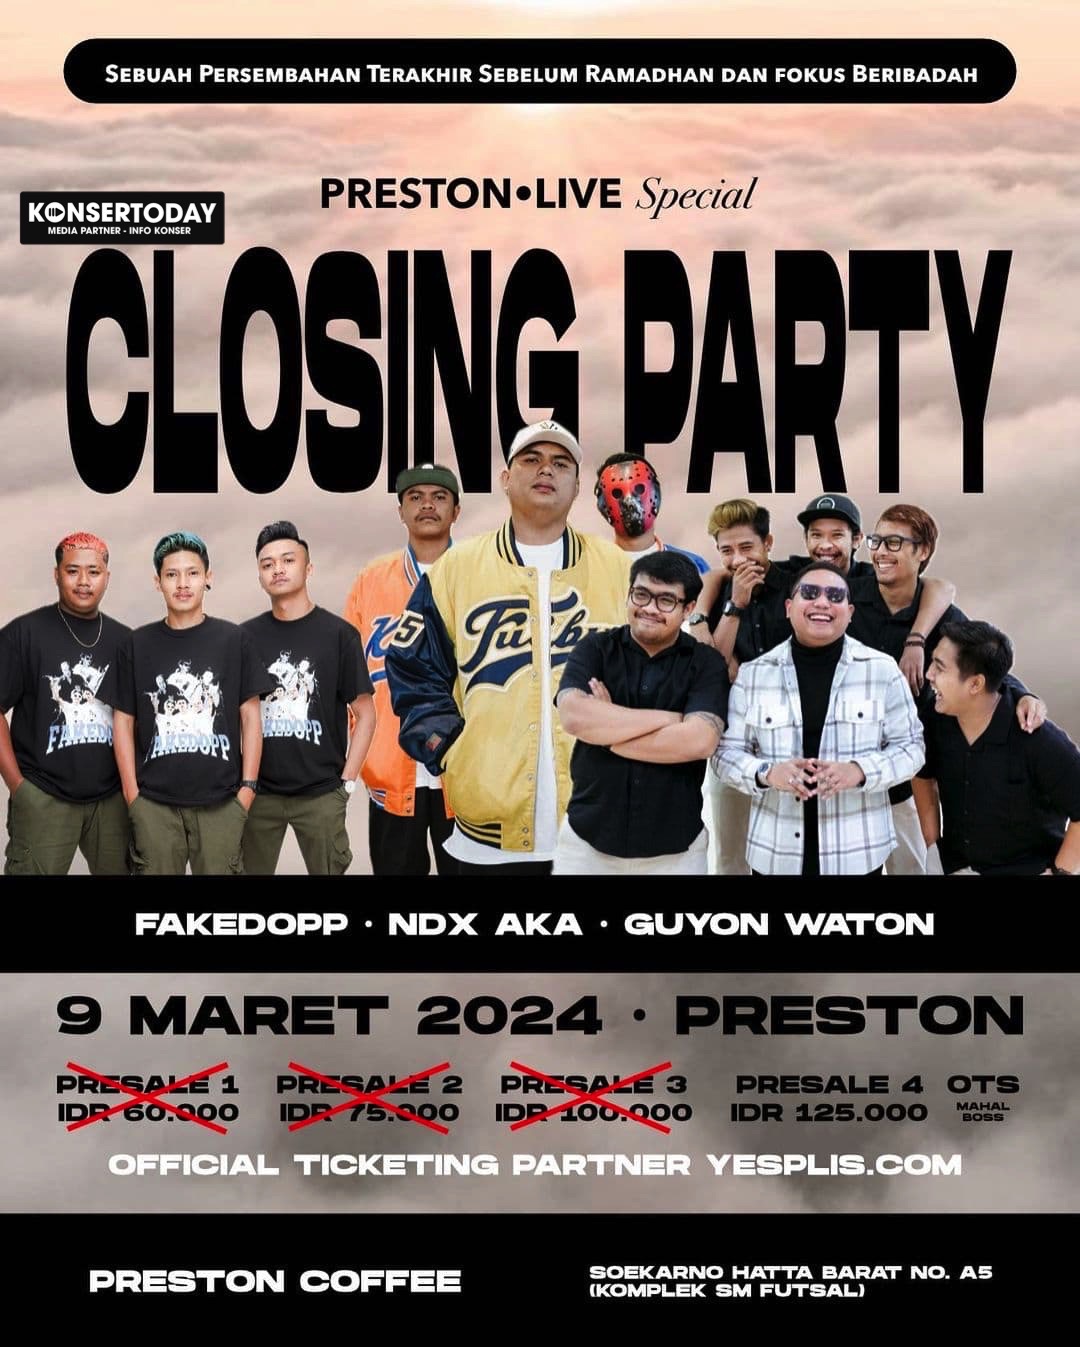 Preston Live Special Closing Party (9 Maret 2024)